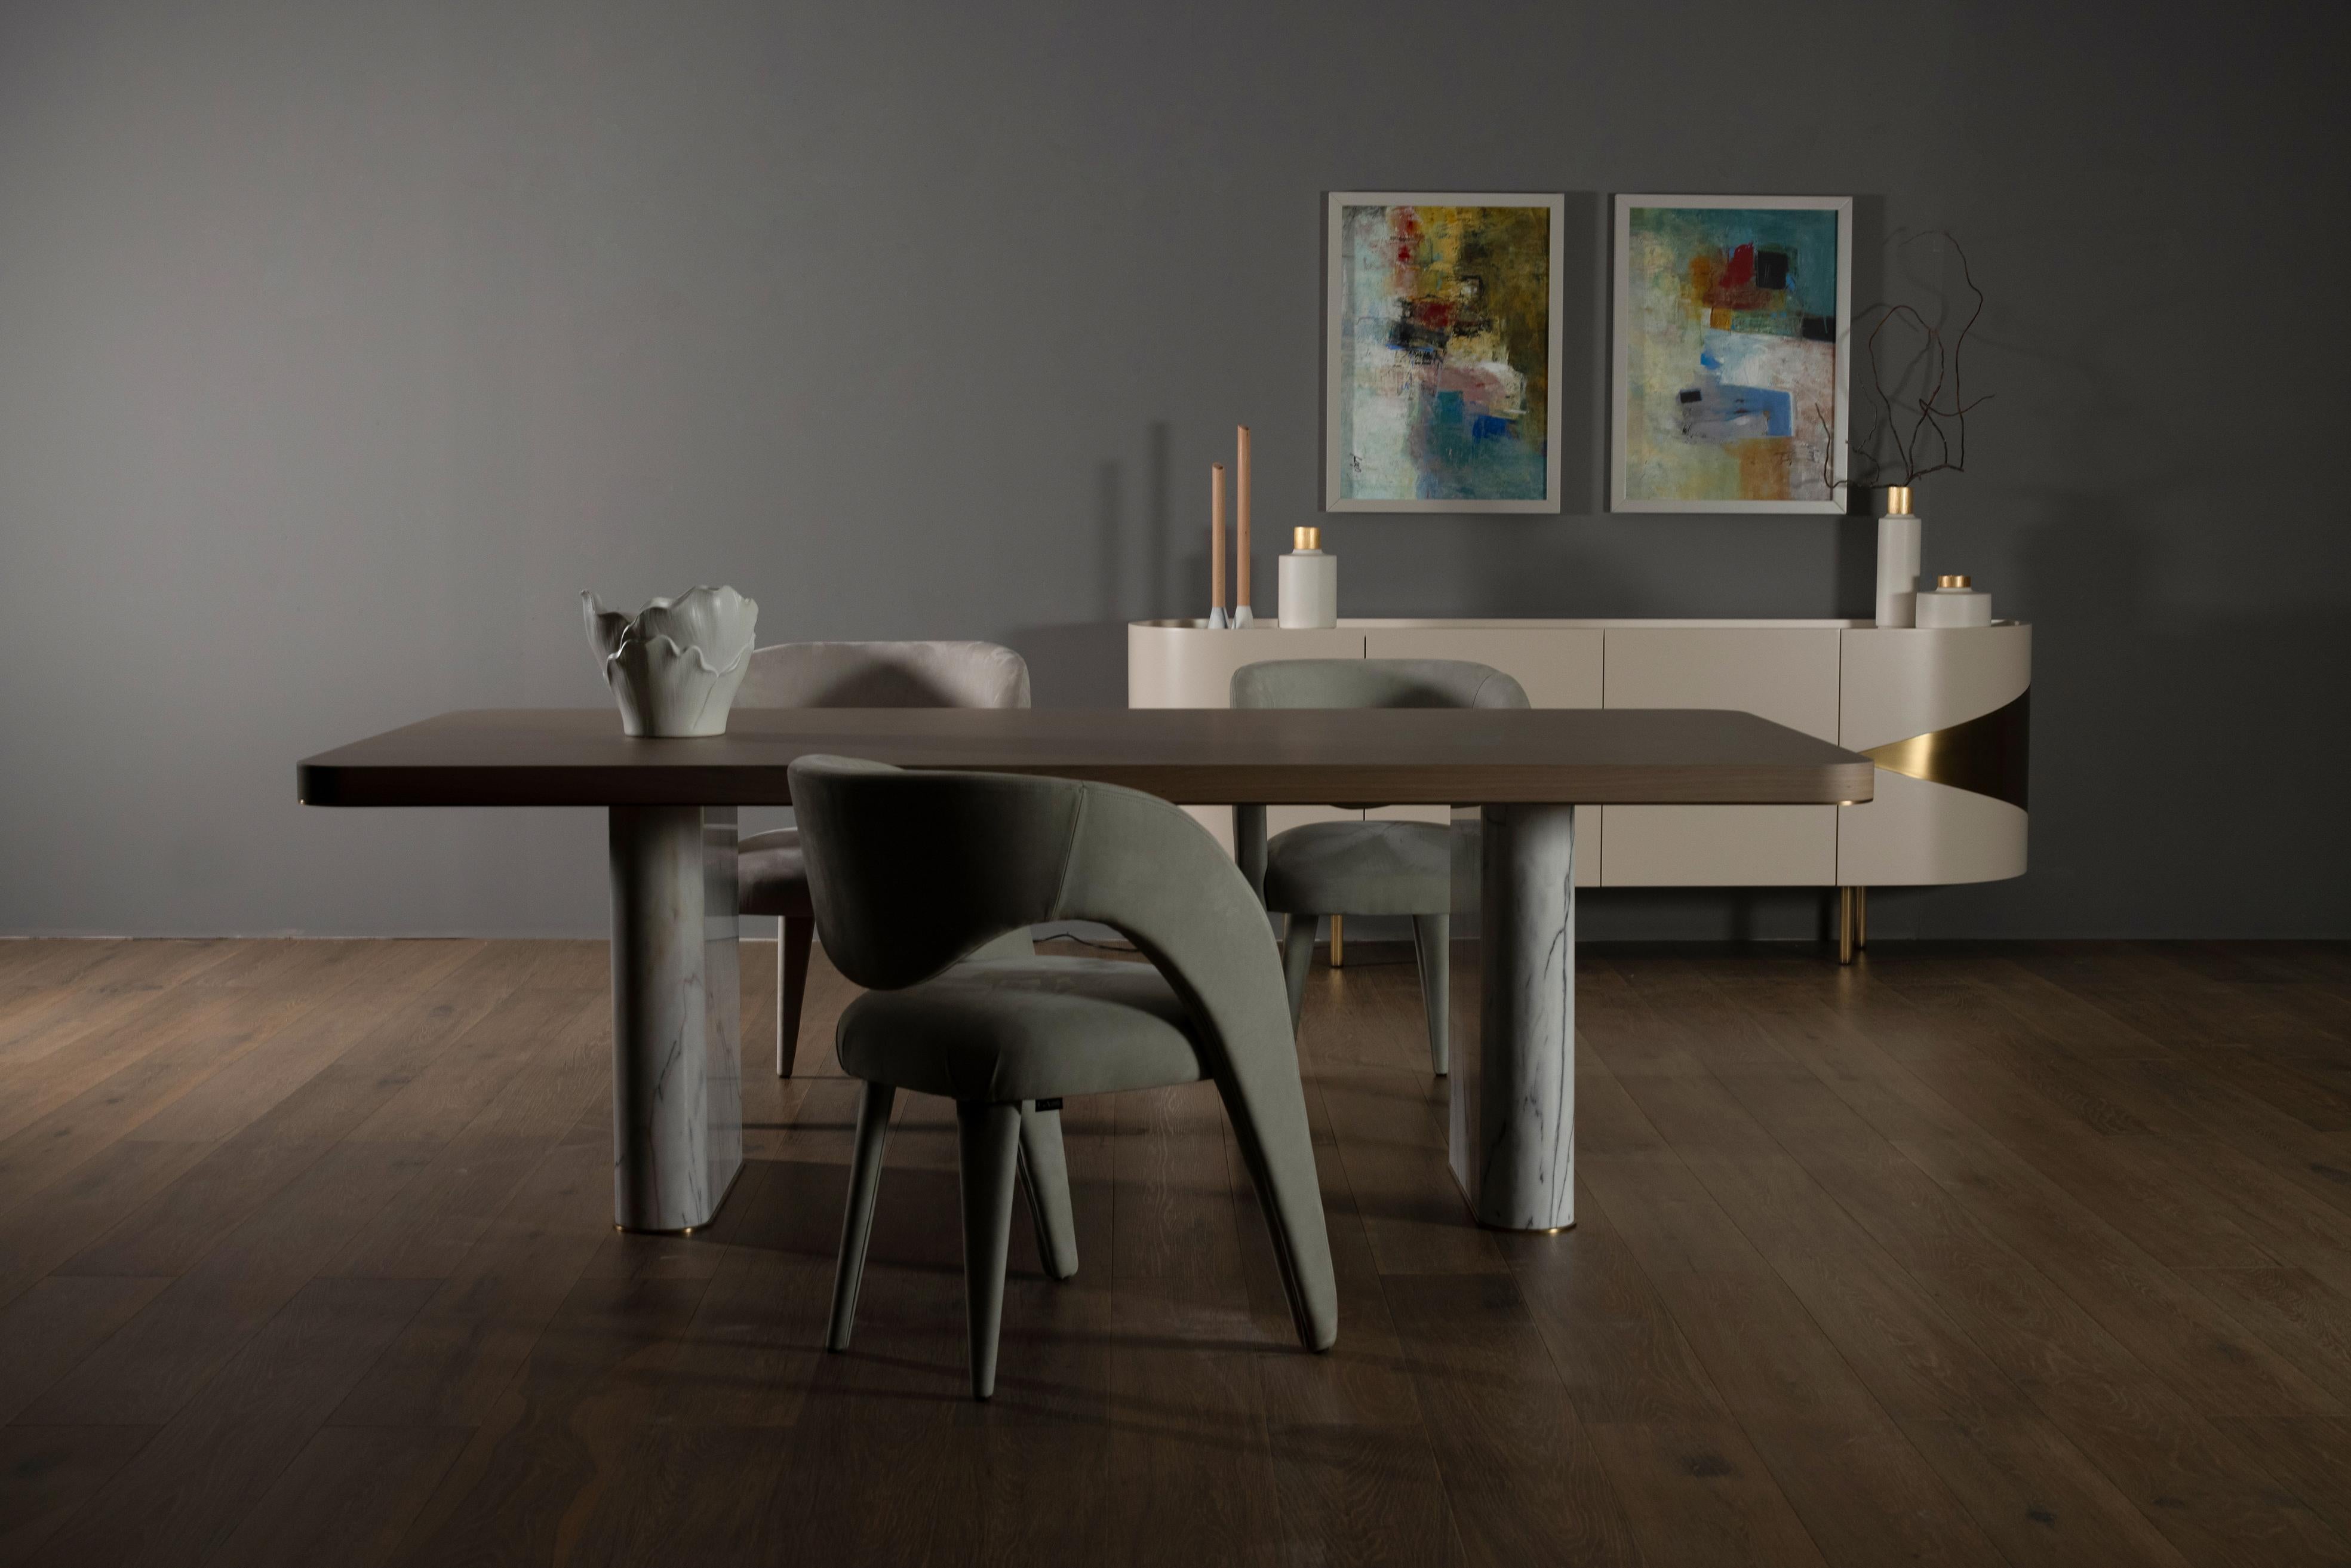 Fall Dining Table, Collection'S Contemporary, handgefertigt in Portugal - Europa von Greenapple.

Mit dem Fall Esstisch entsteht eine moderne Ausstrahlung, die jeden Essbereich aufwertet, indem sie die außergewöhnliche Handwerkskunst und das Design